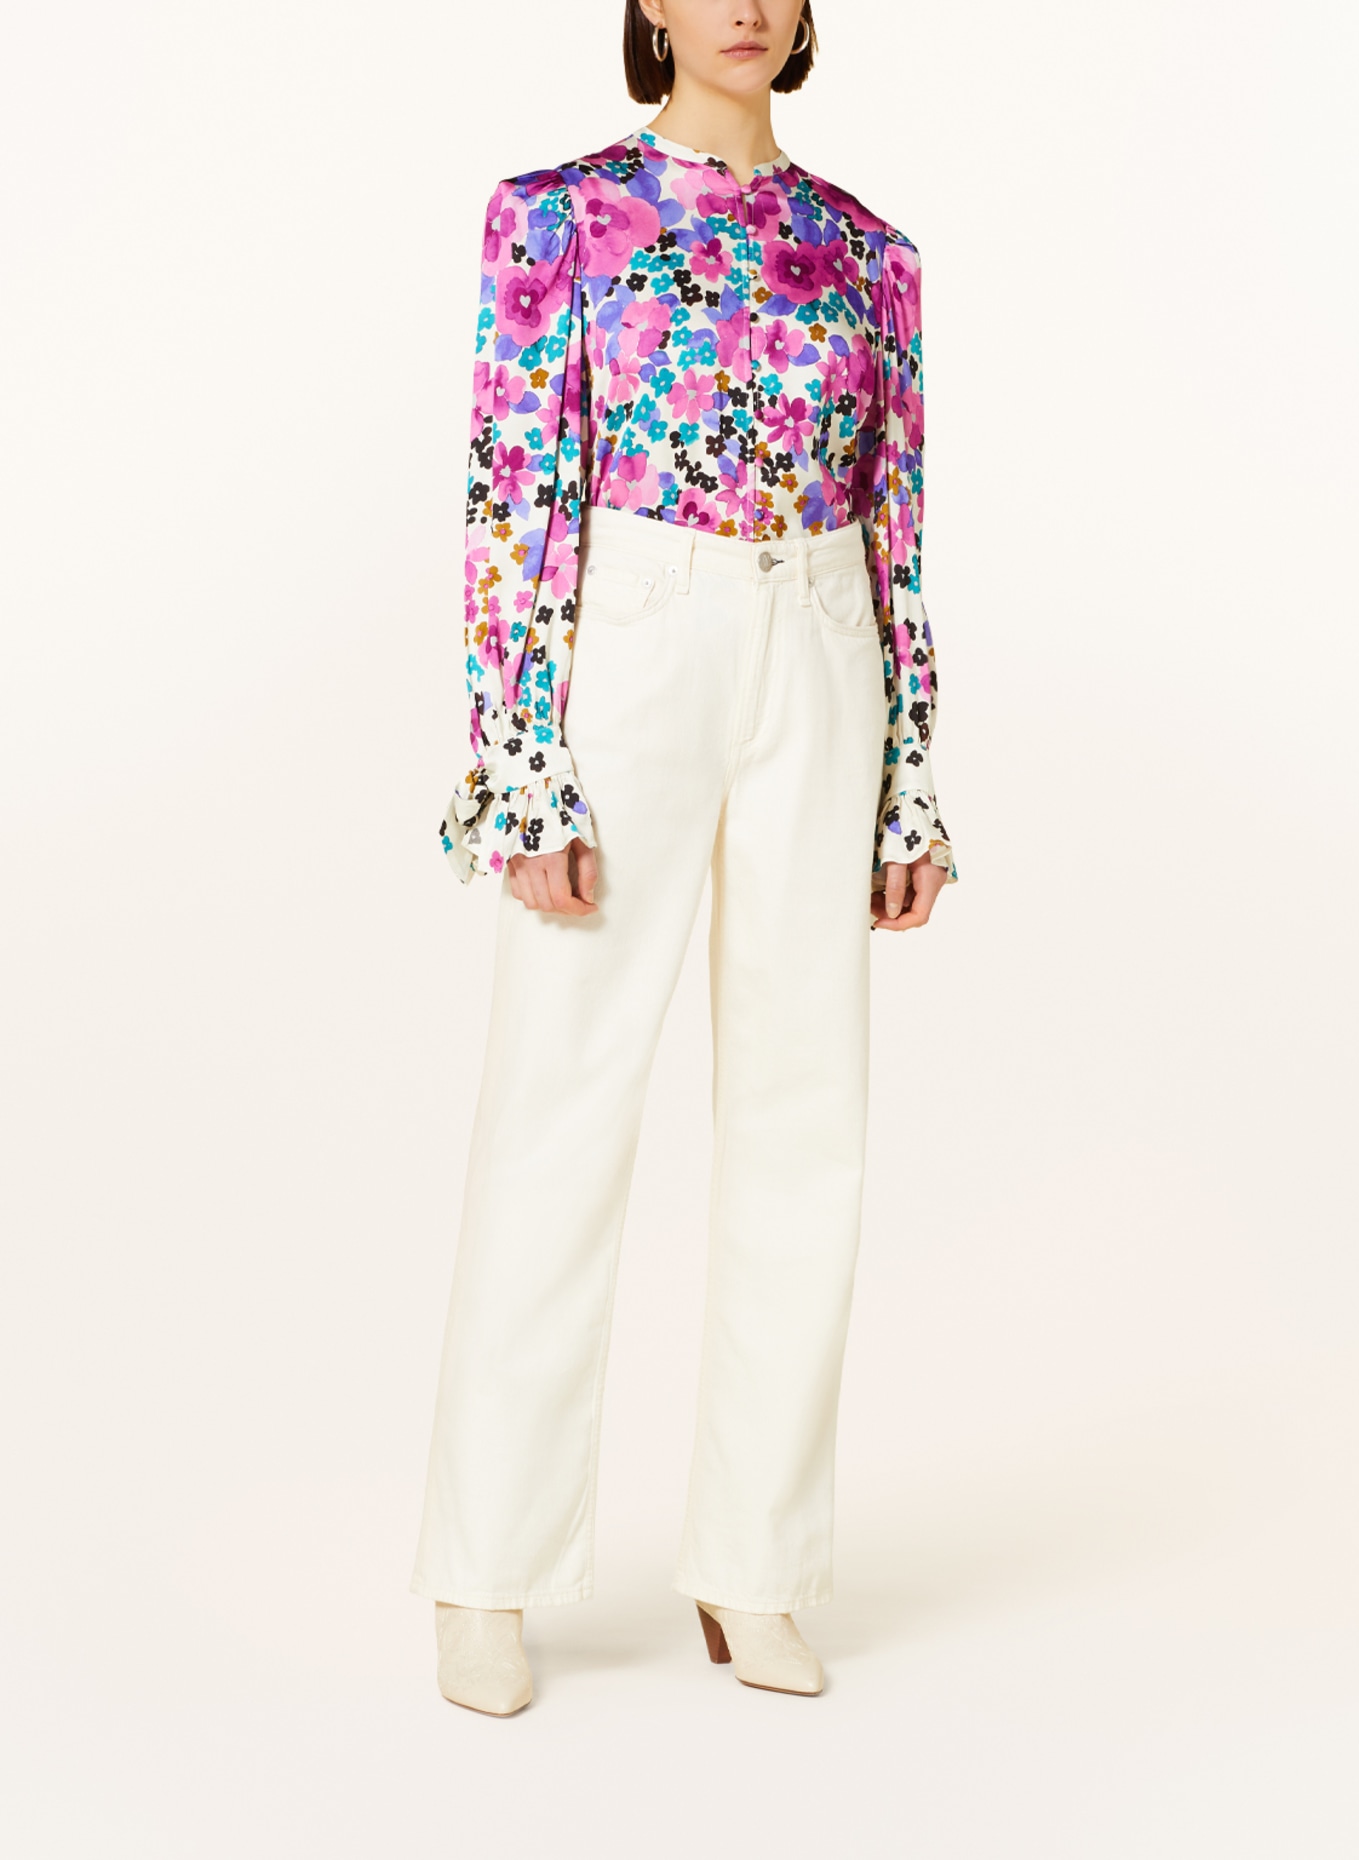 FABIENNE CHAPOT Satin blouse KYLIE, Color: ECRU/ FUCHSIA/ TEAL (Image 2)